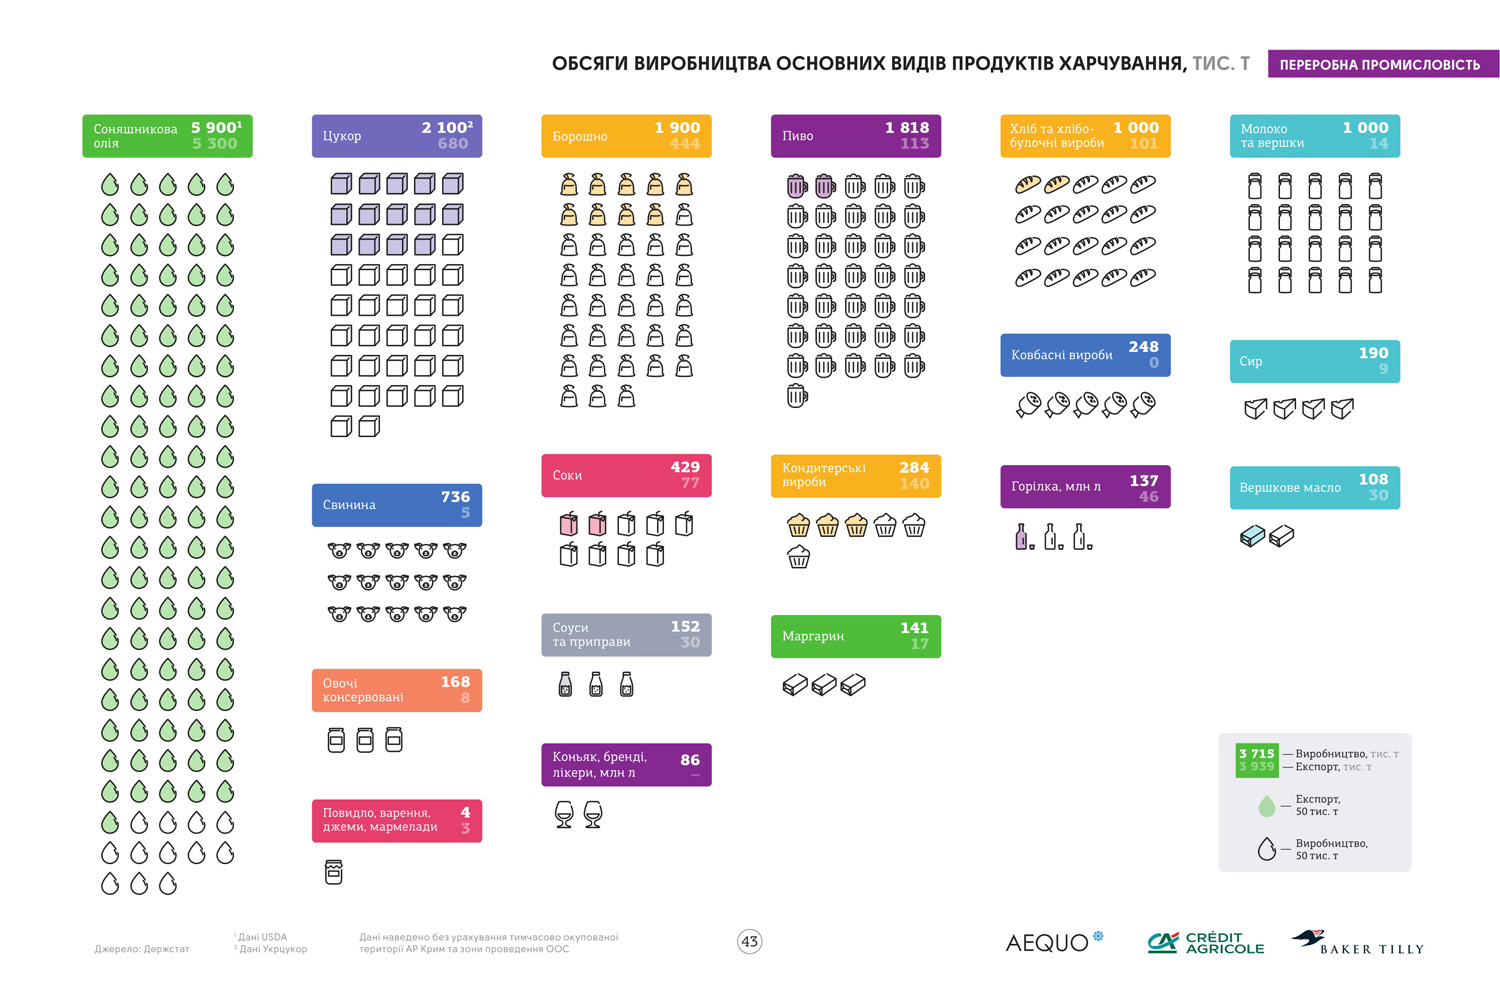 Источник данных: инфографический справочник «Агробизнес Украины 2017/18» (кликните для увеличения)